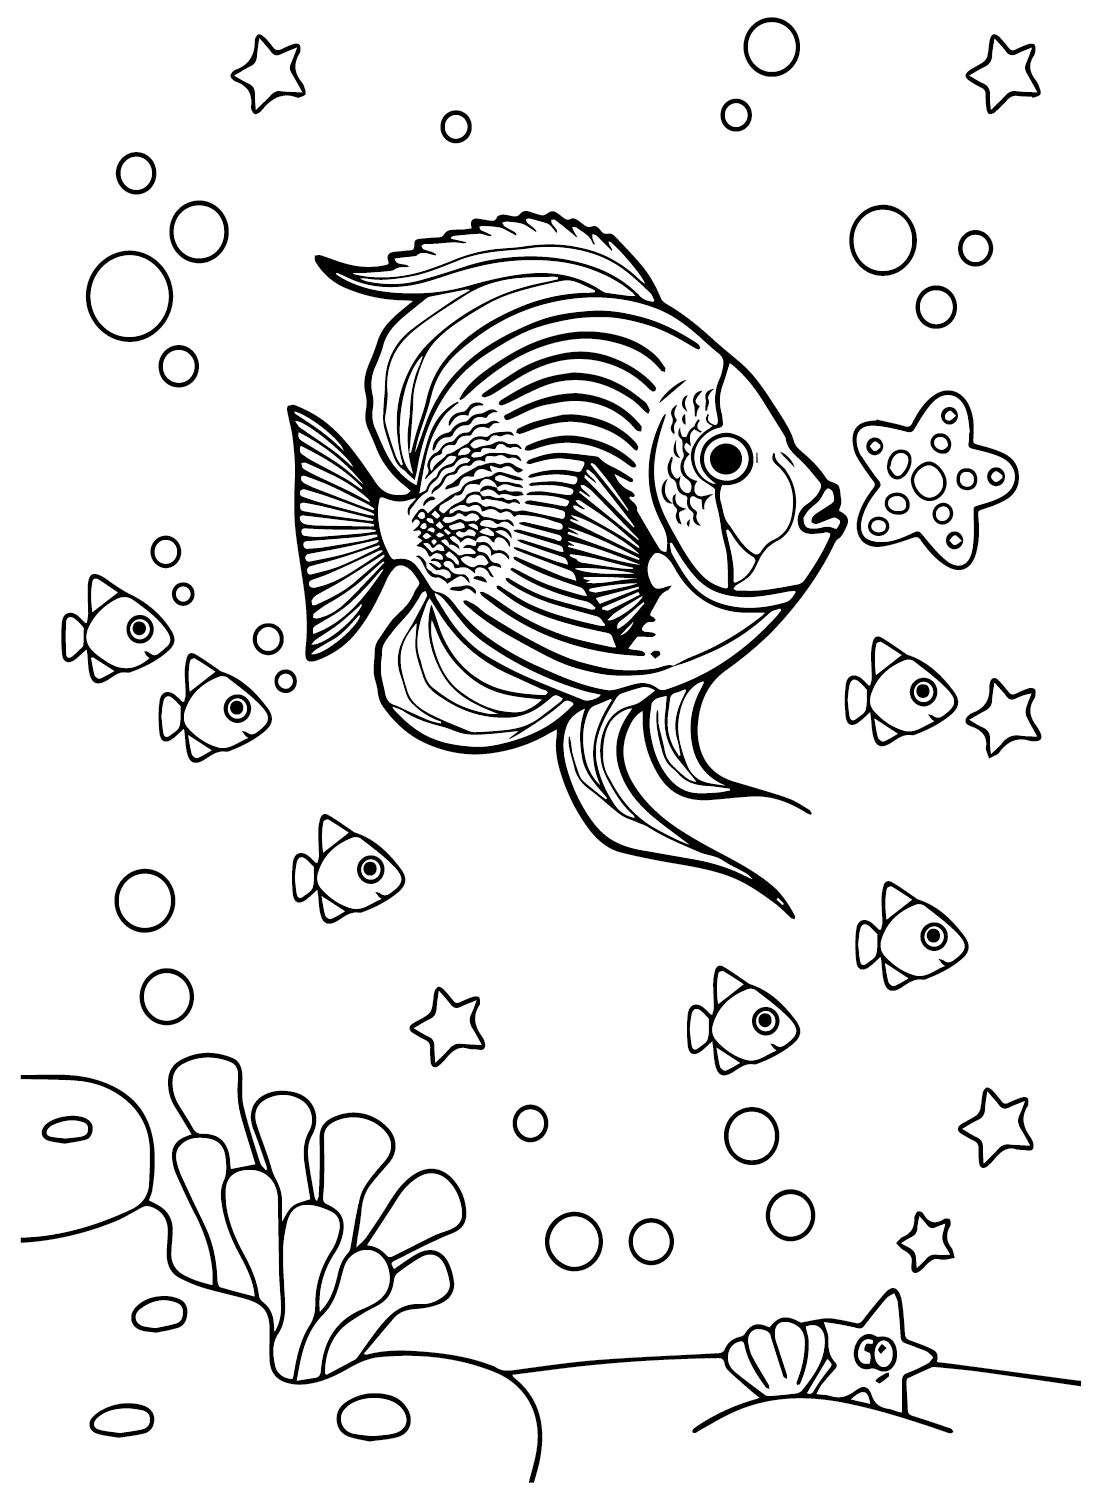 Wimpelkorallenfische und kleine Fische von Wimpelkorallenfischen